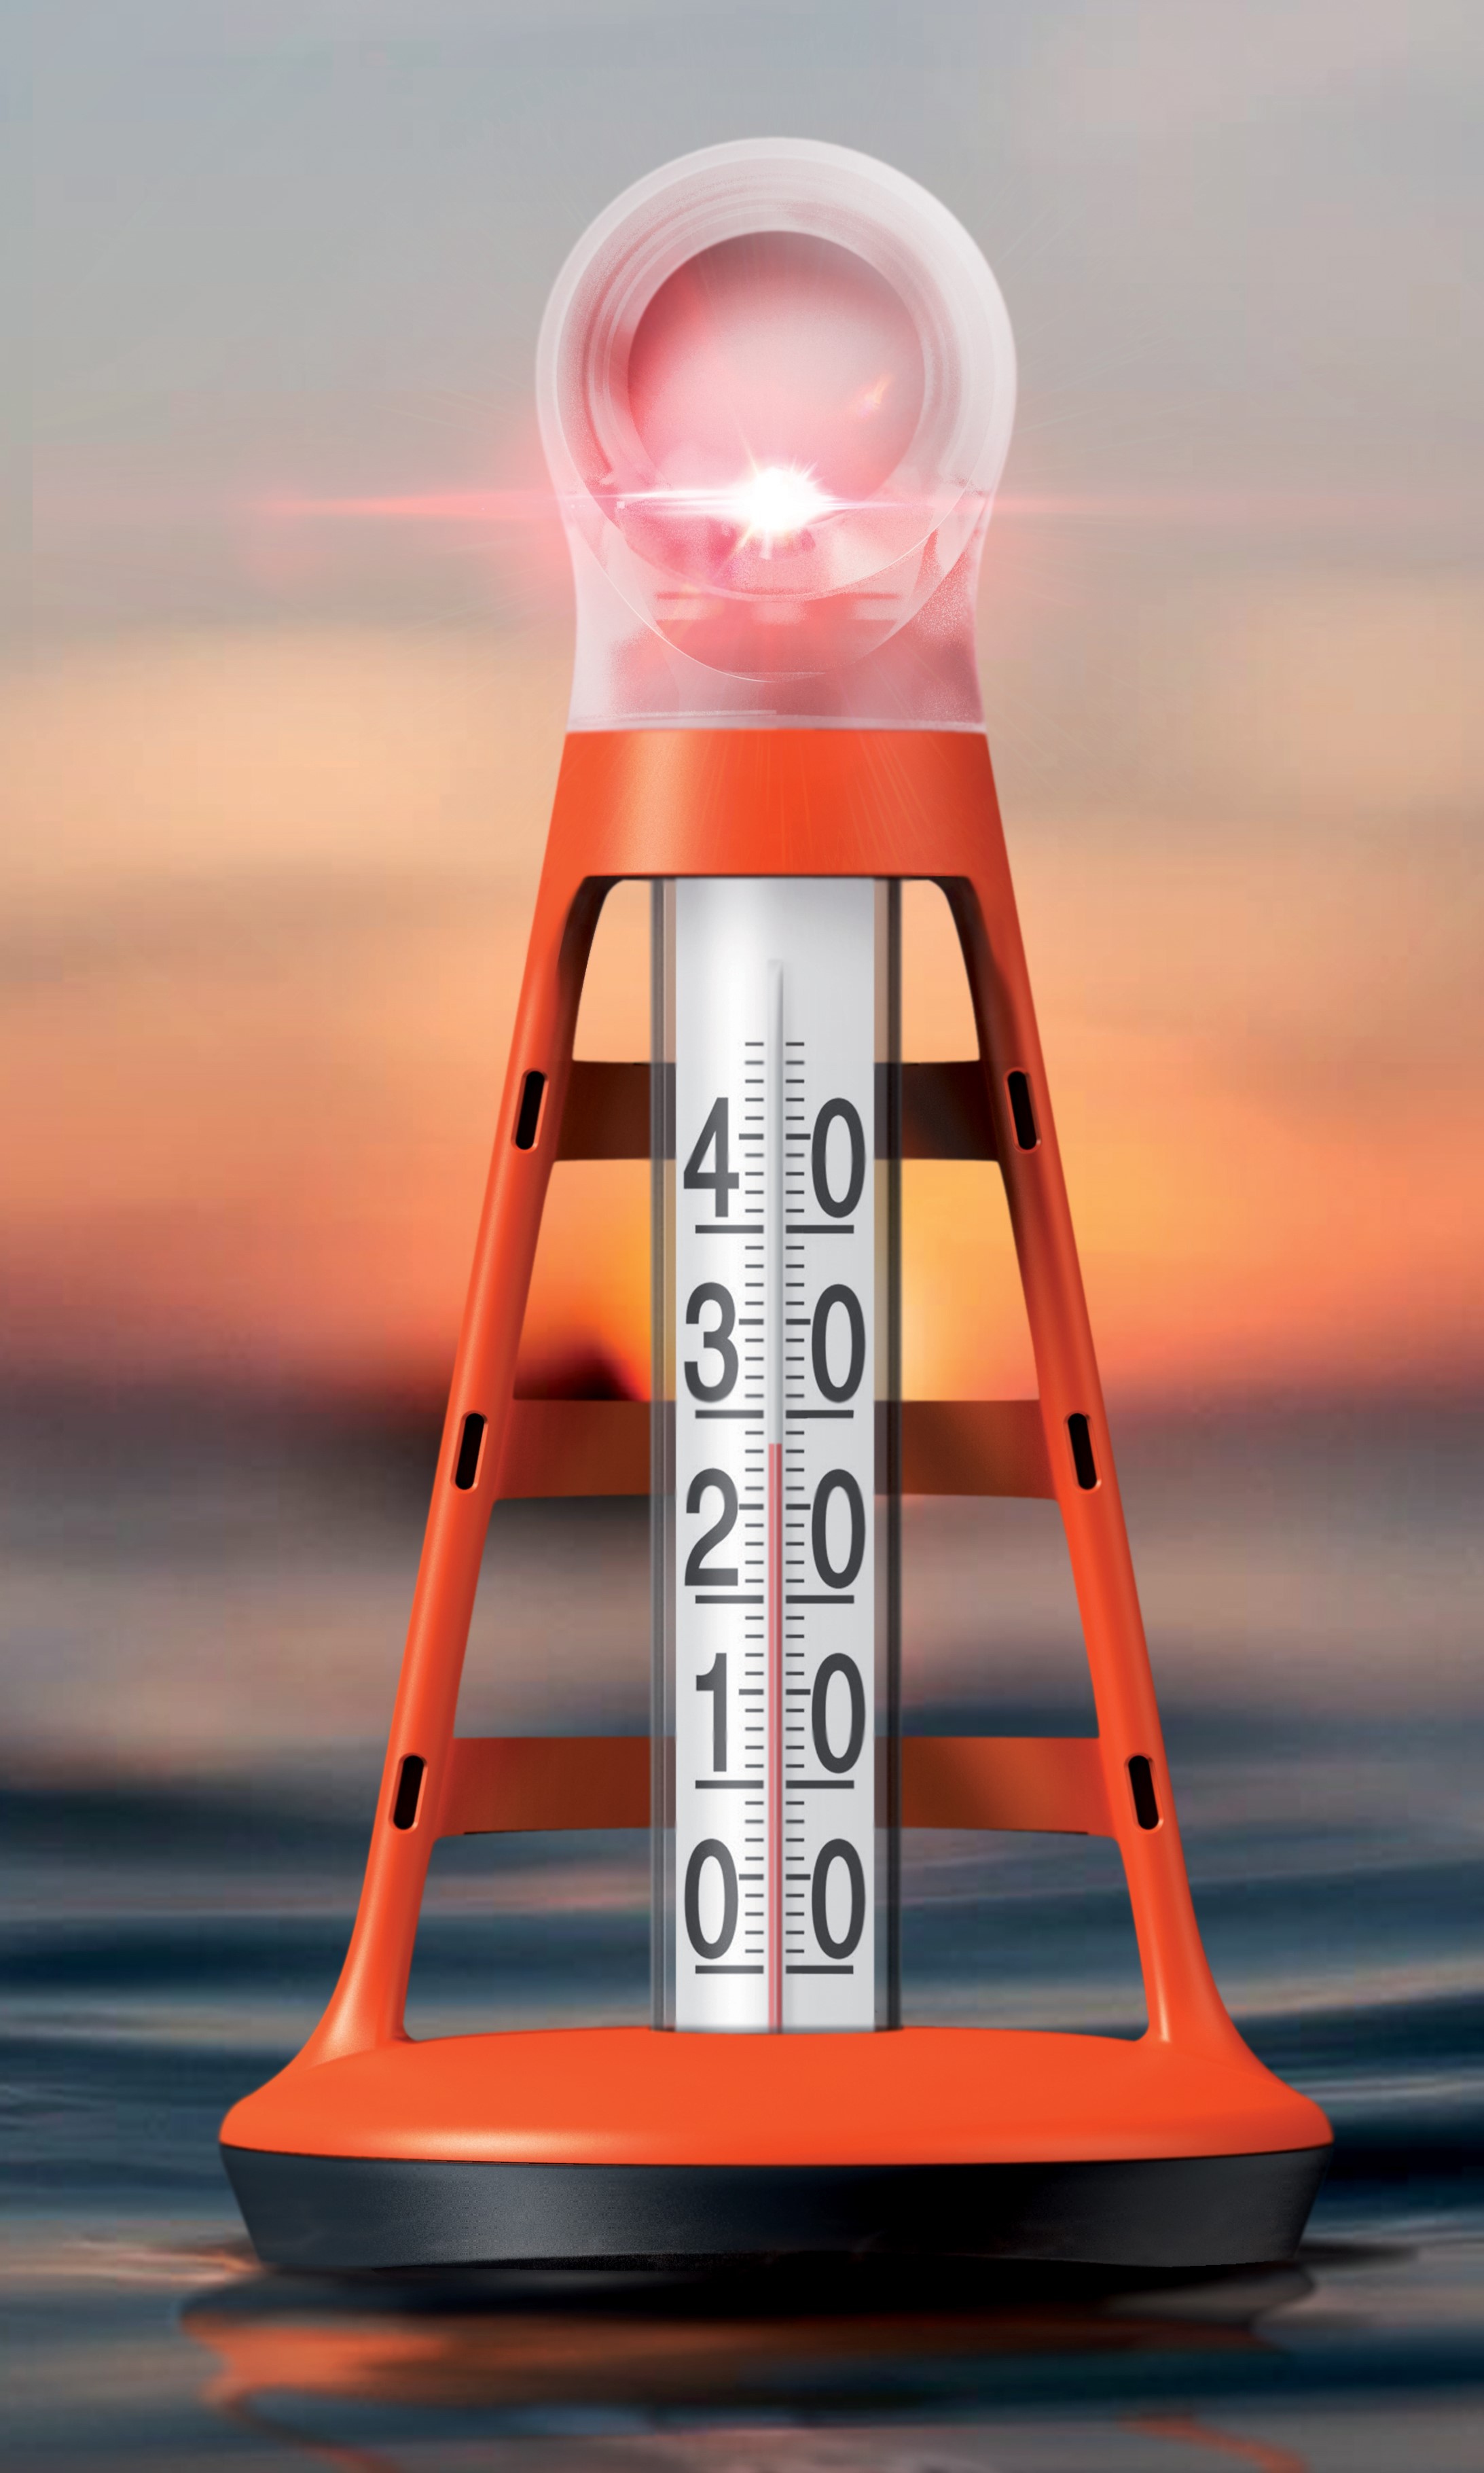 Thermomètre de Piscine Flottant, thermomètre de température d'eau